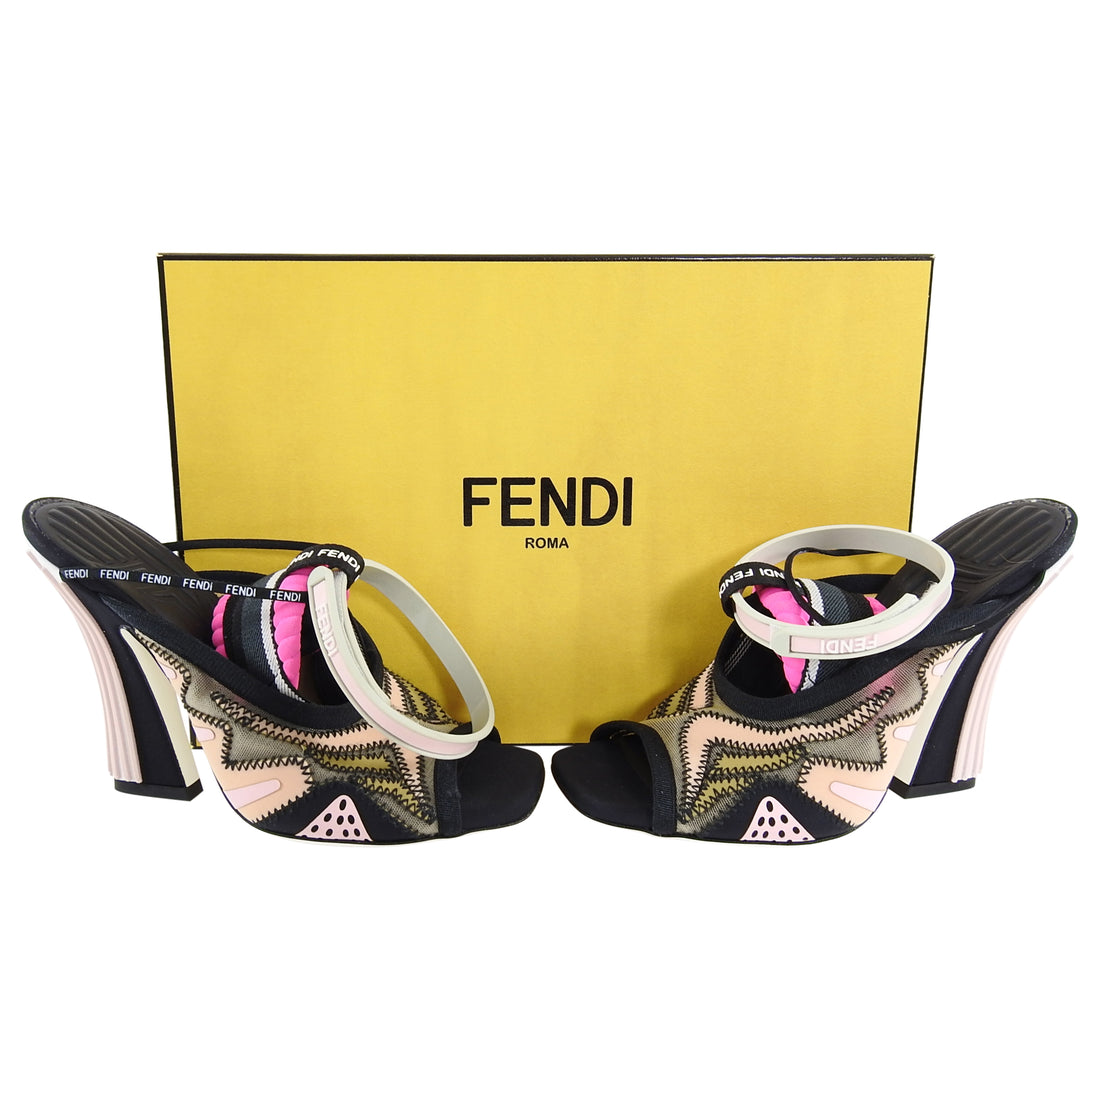 Fendi Freedom Peep Toe Pink and Black Heel Sandals - 36 / 6